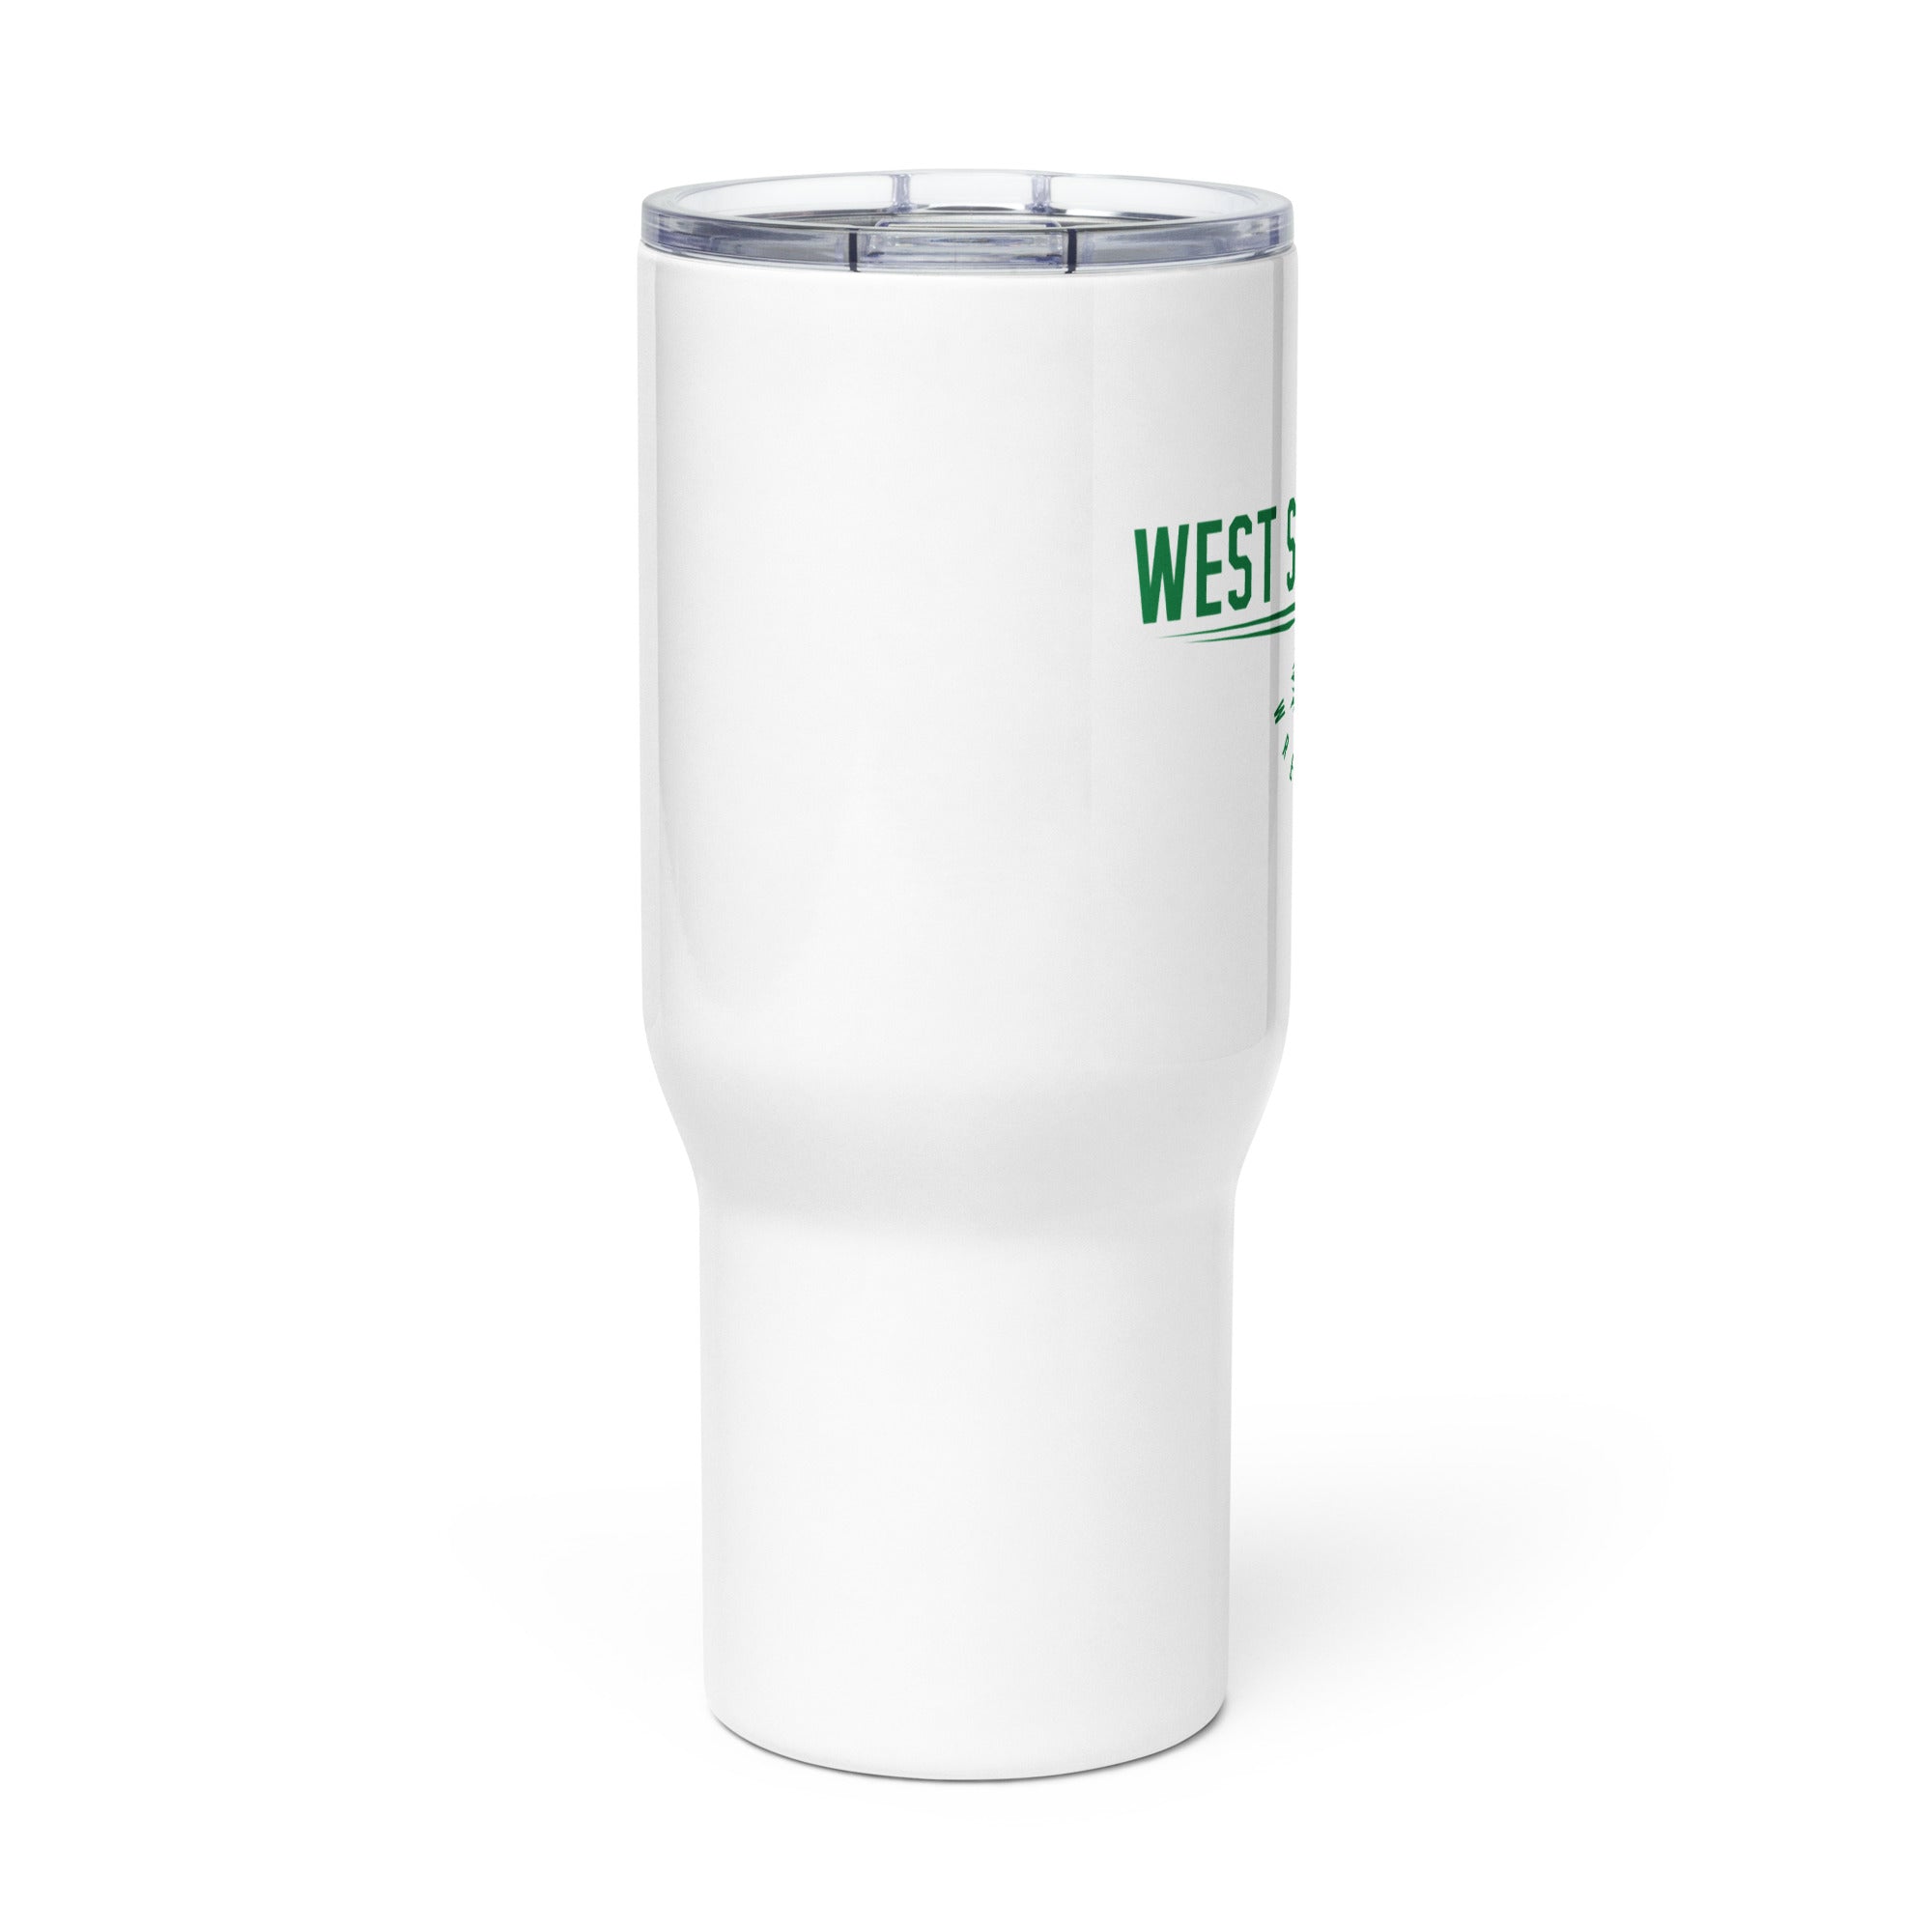 West Side Eagles Wrestling Travel mug with a handle